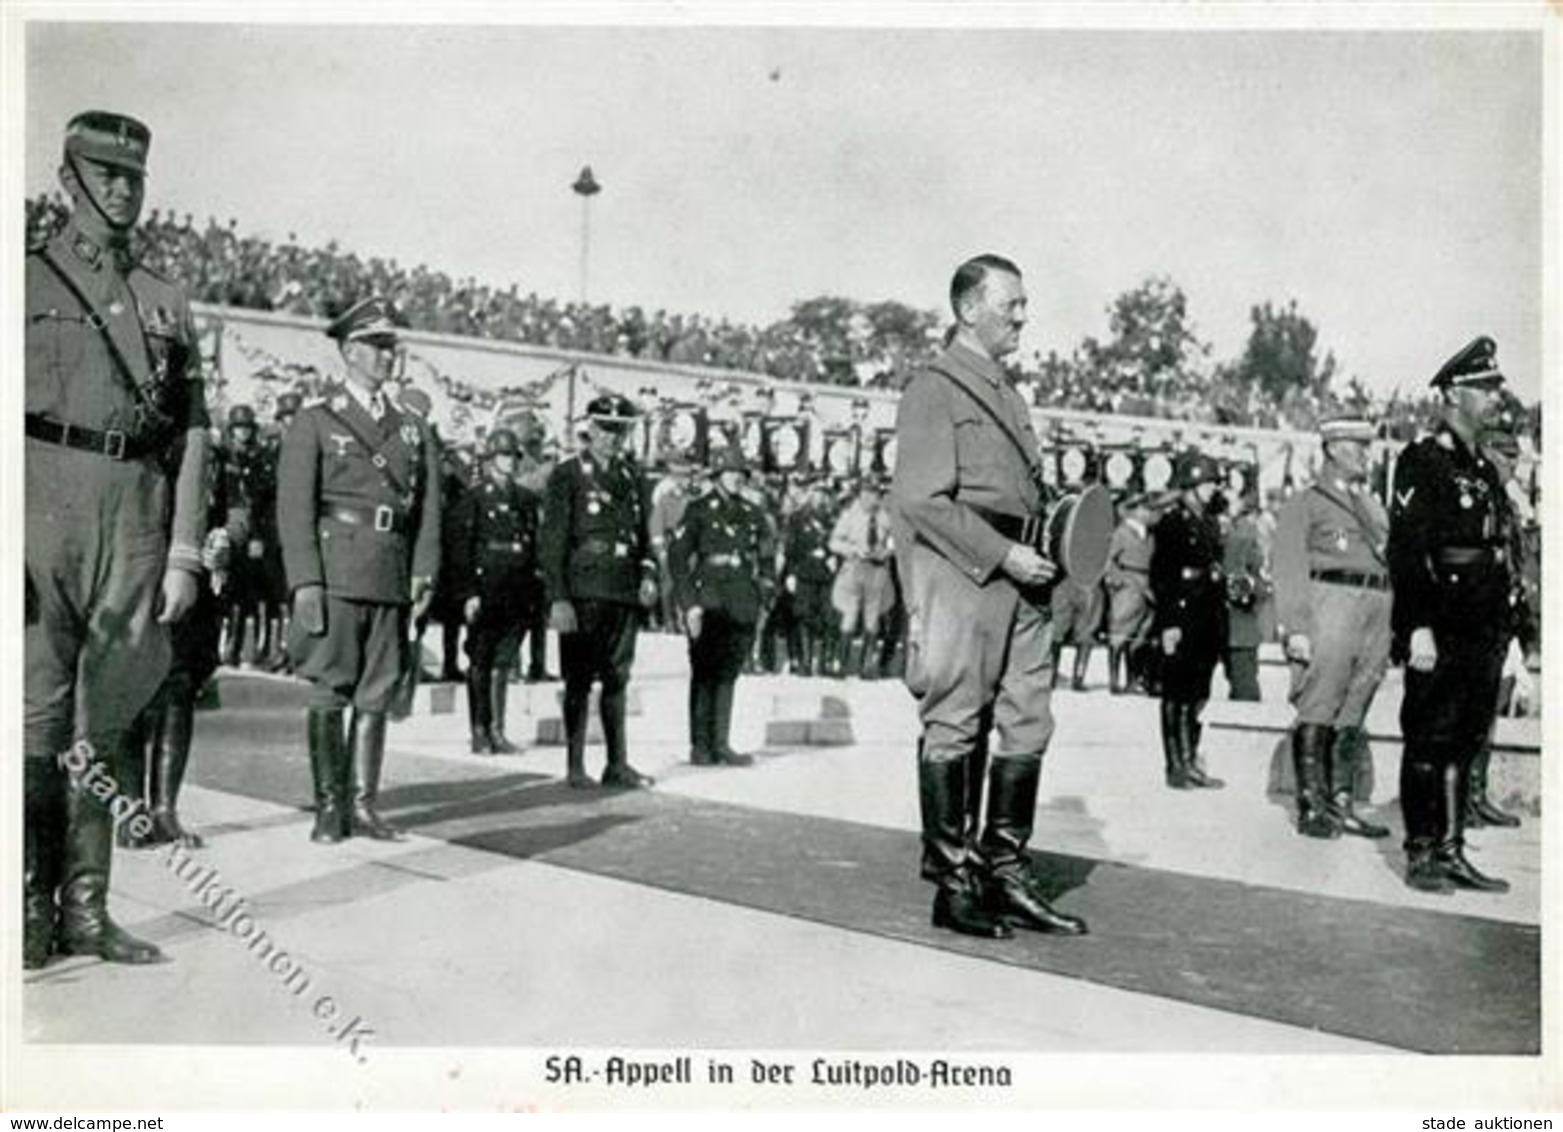 REICHSPARTEITAG NÜRNBERG WK II - PH - SA-APPELL In Der Luitpold-Arena Mit SS-HIMMLER I-II - Weltkrieg 1939-45